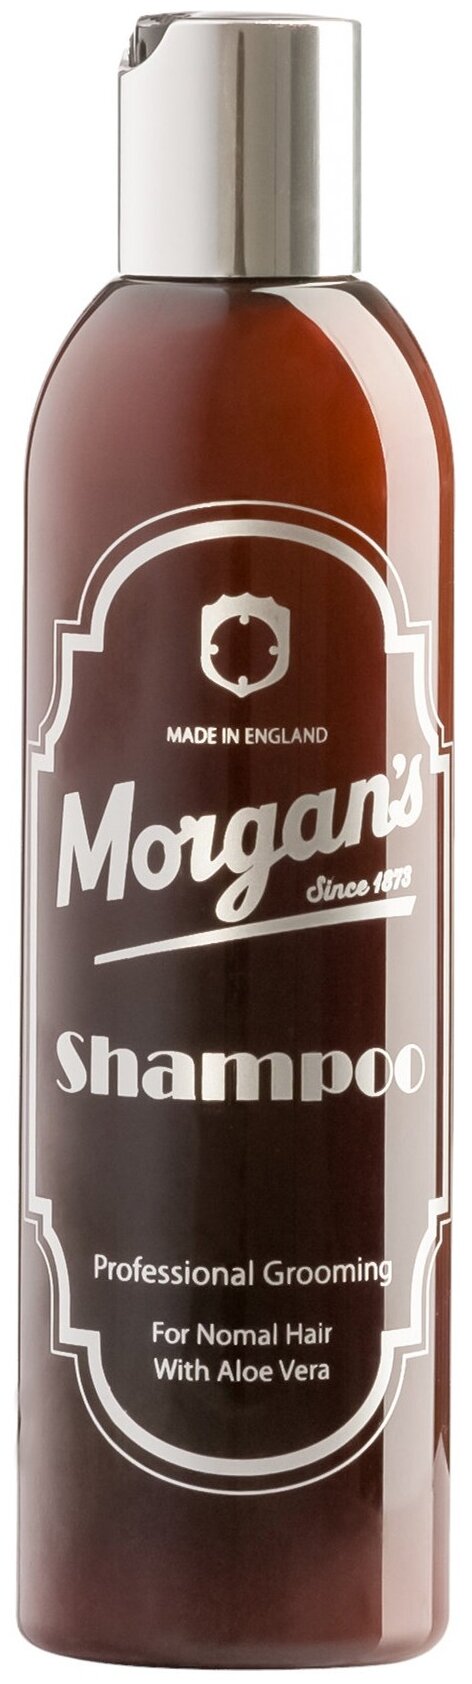 Morgan's Men's Shampoo - Шампунь для волос мужской, 250 мл